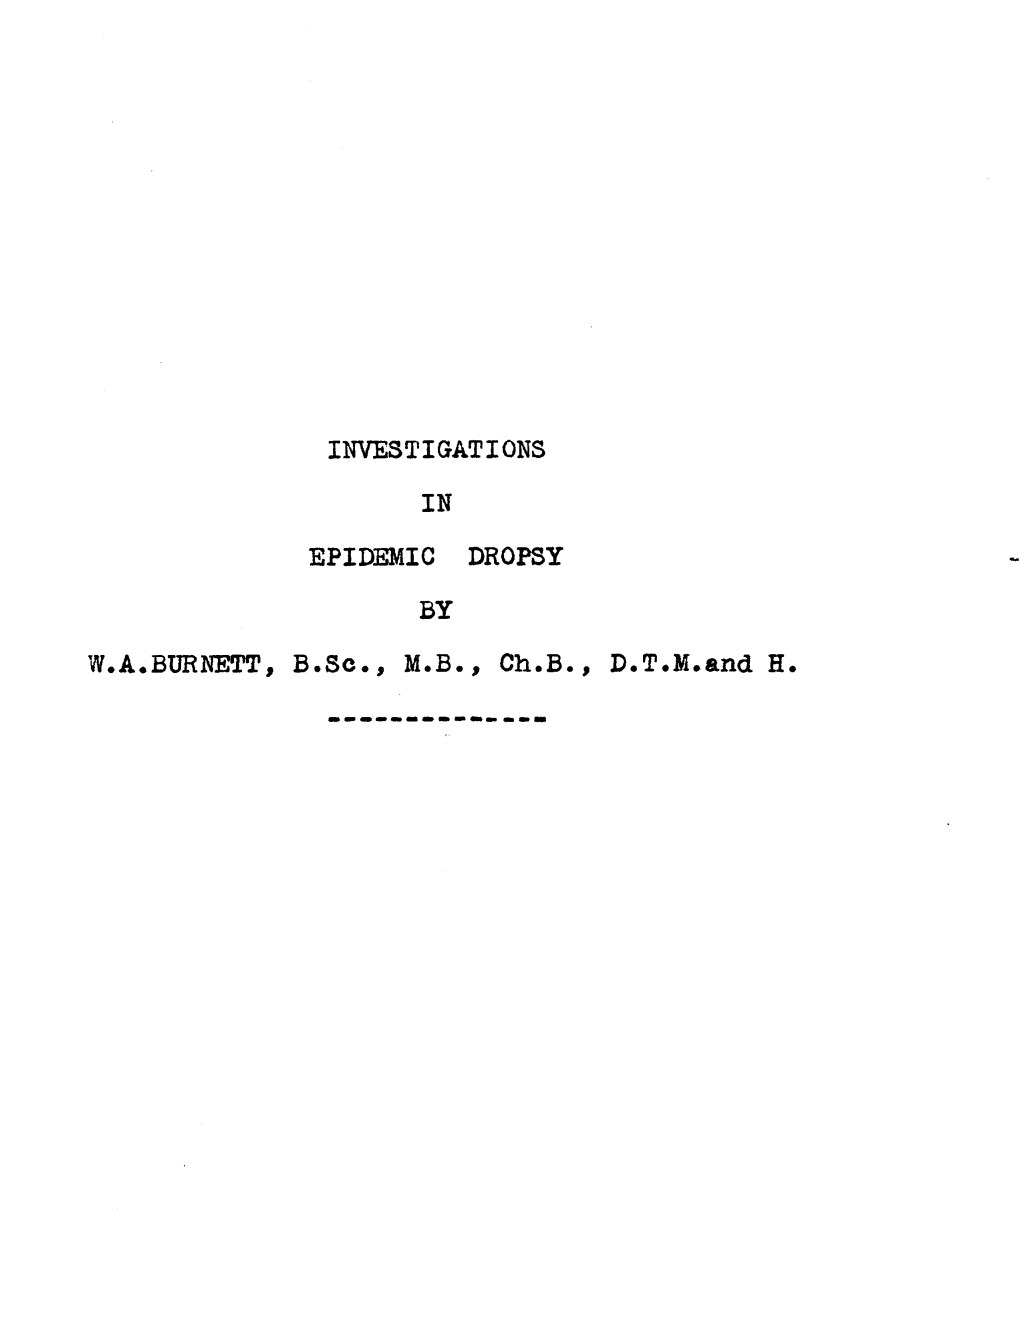 W.A.BURNETT, INVESTIGATIONS in EPIDEMIC DROPSY by B.Sc., M.B